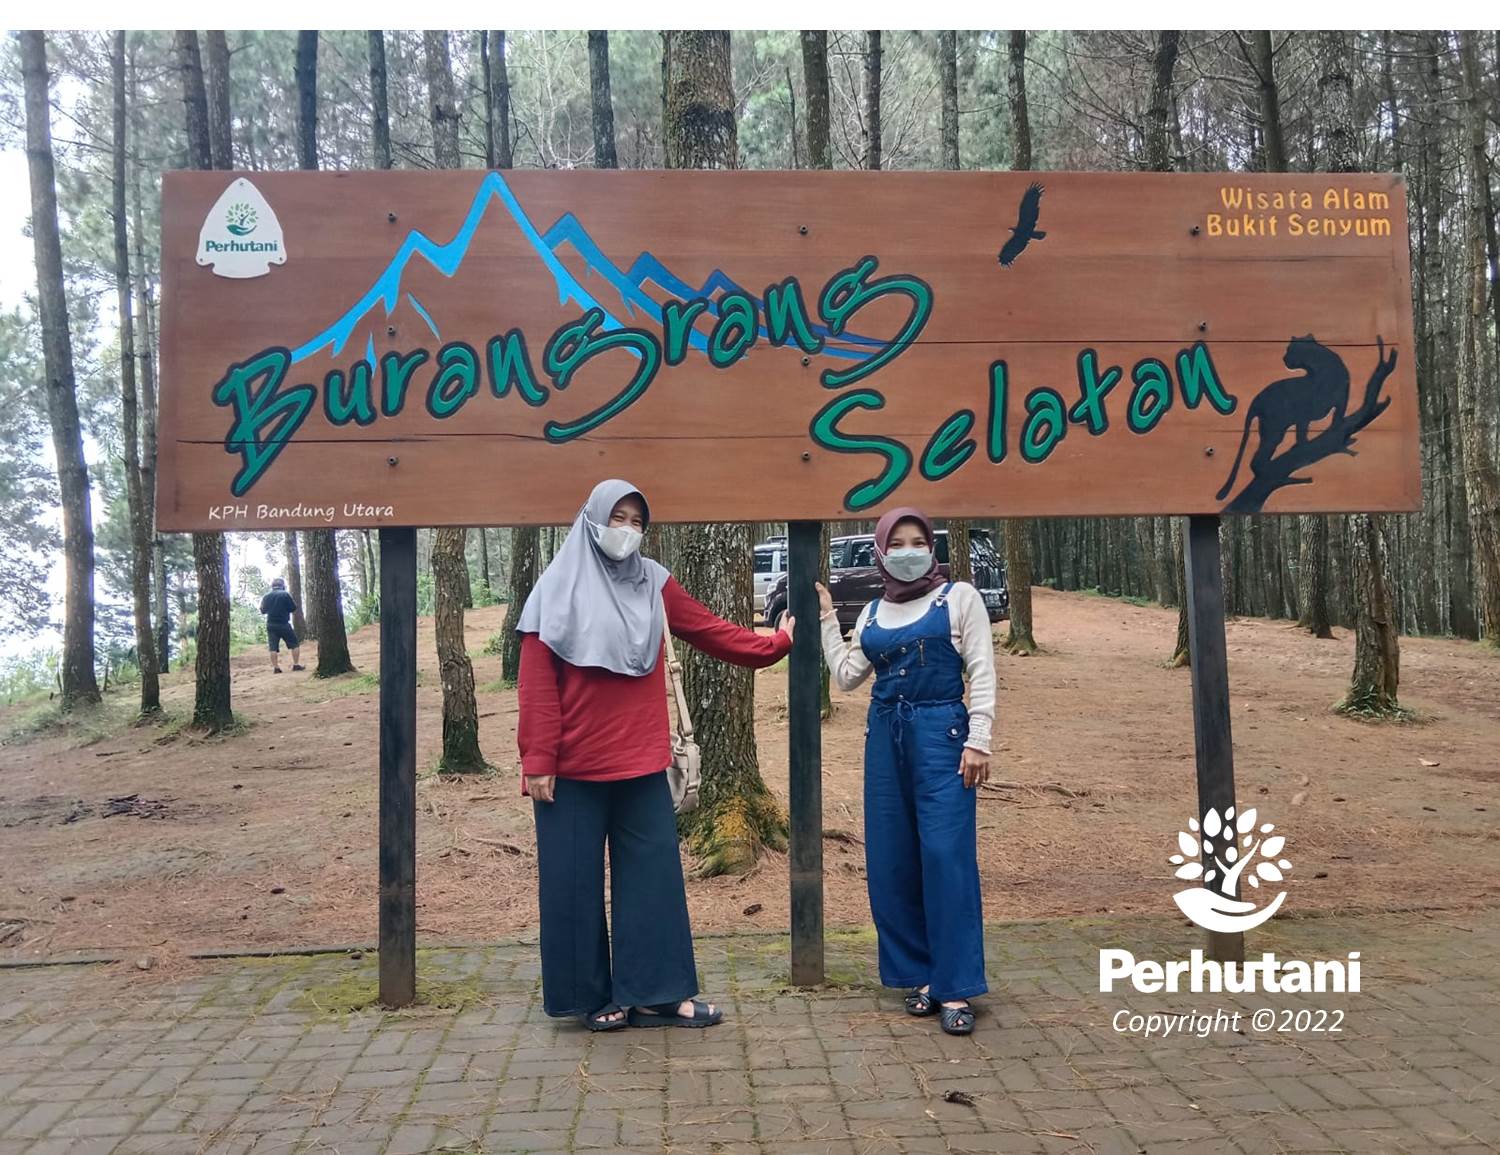 Perhutani Wisata Bukit Senyum Kph Bandung Utara Menjadi Wisata Favorit Di Bandung Barat Selain 0385